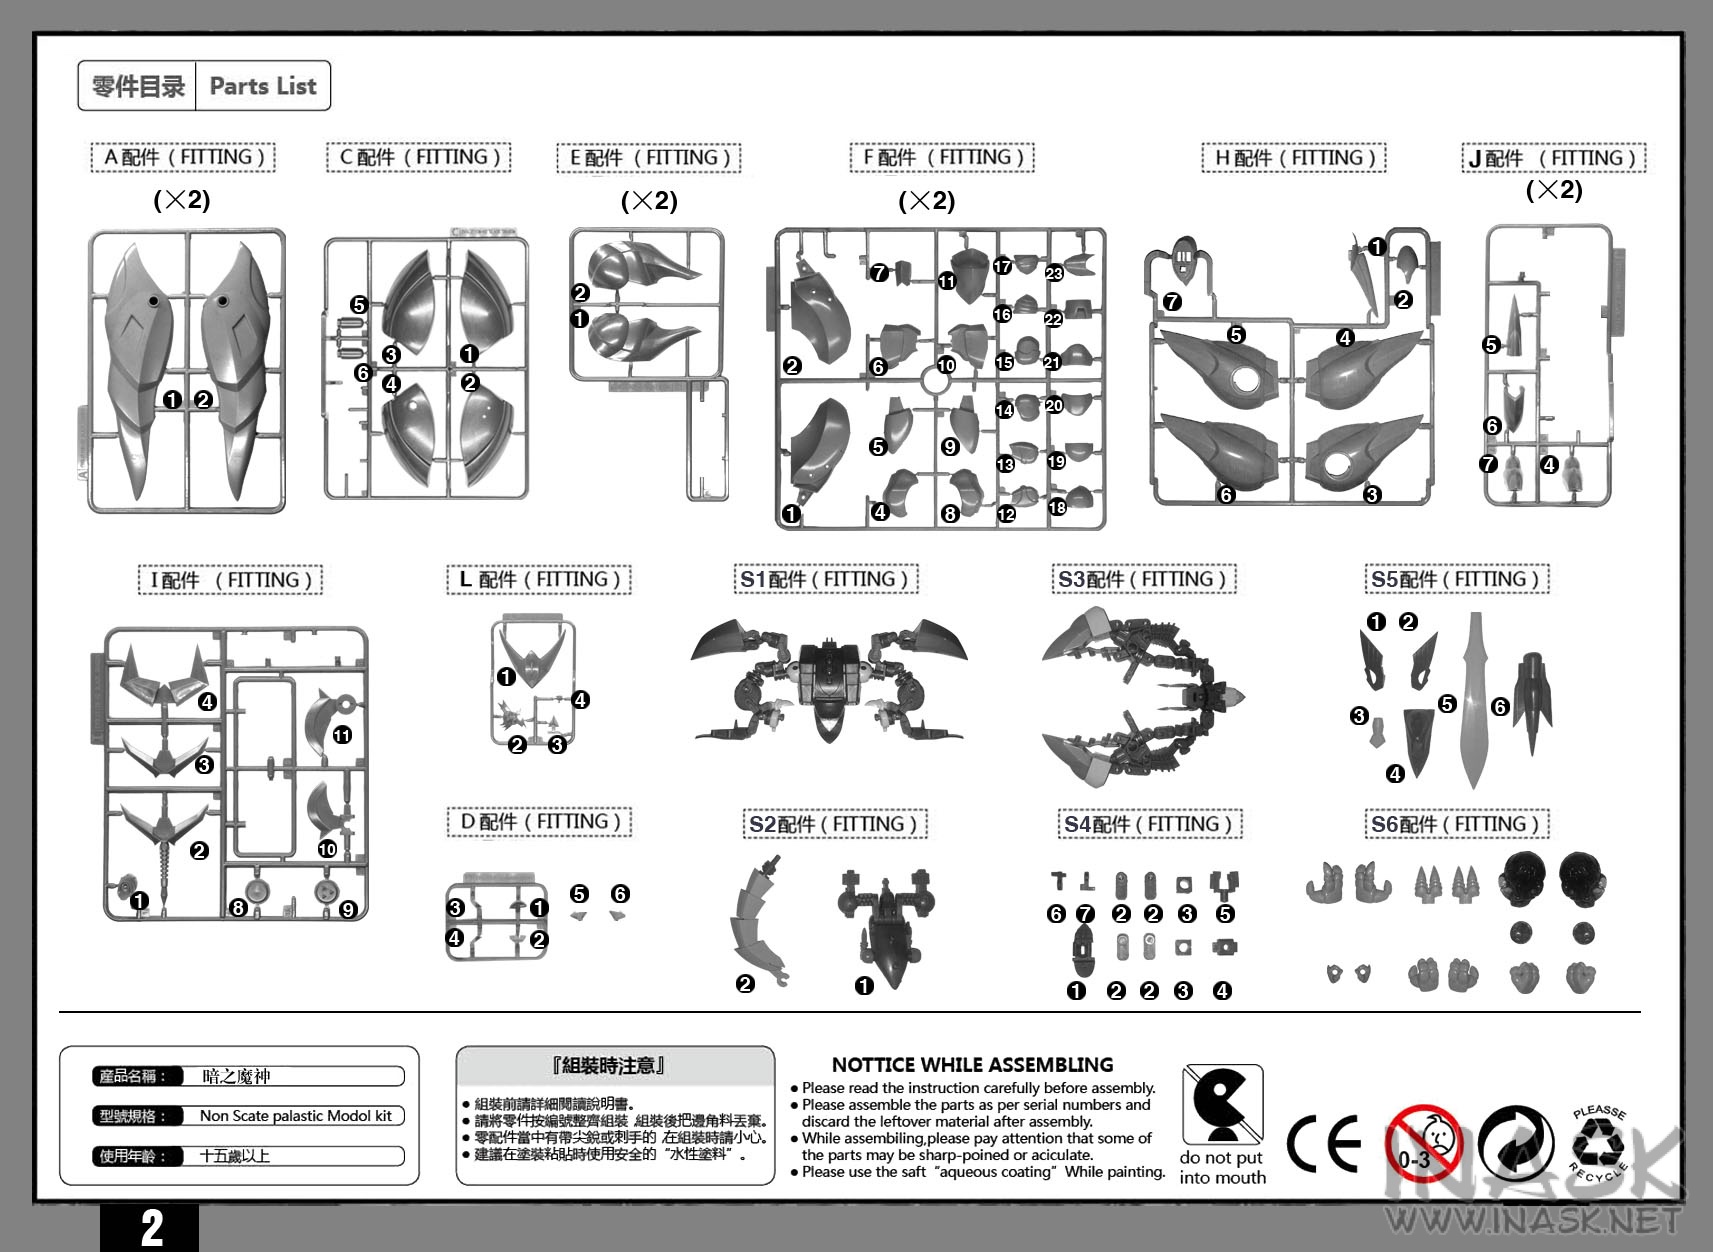 s97-96-ryujin-info006.jpg